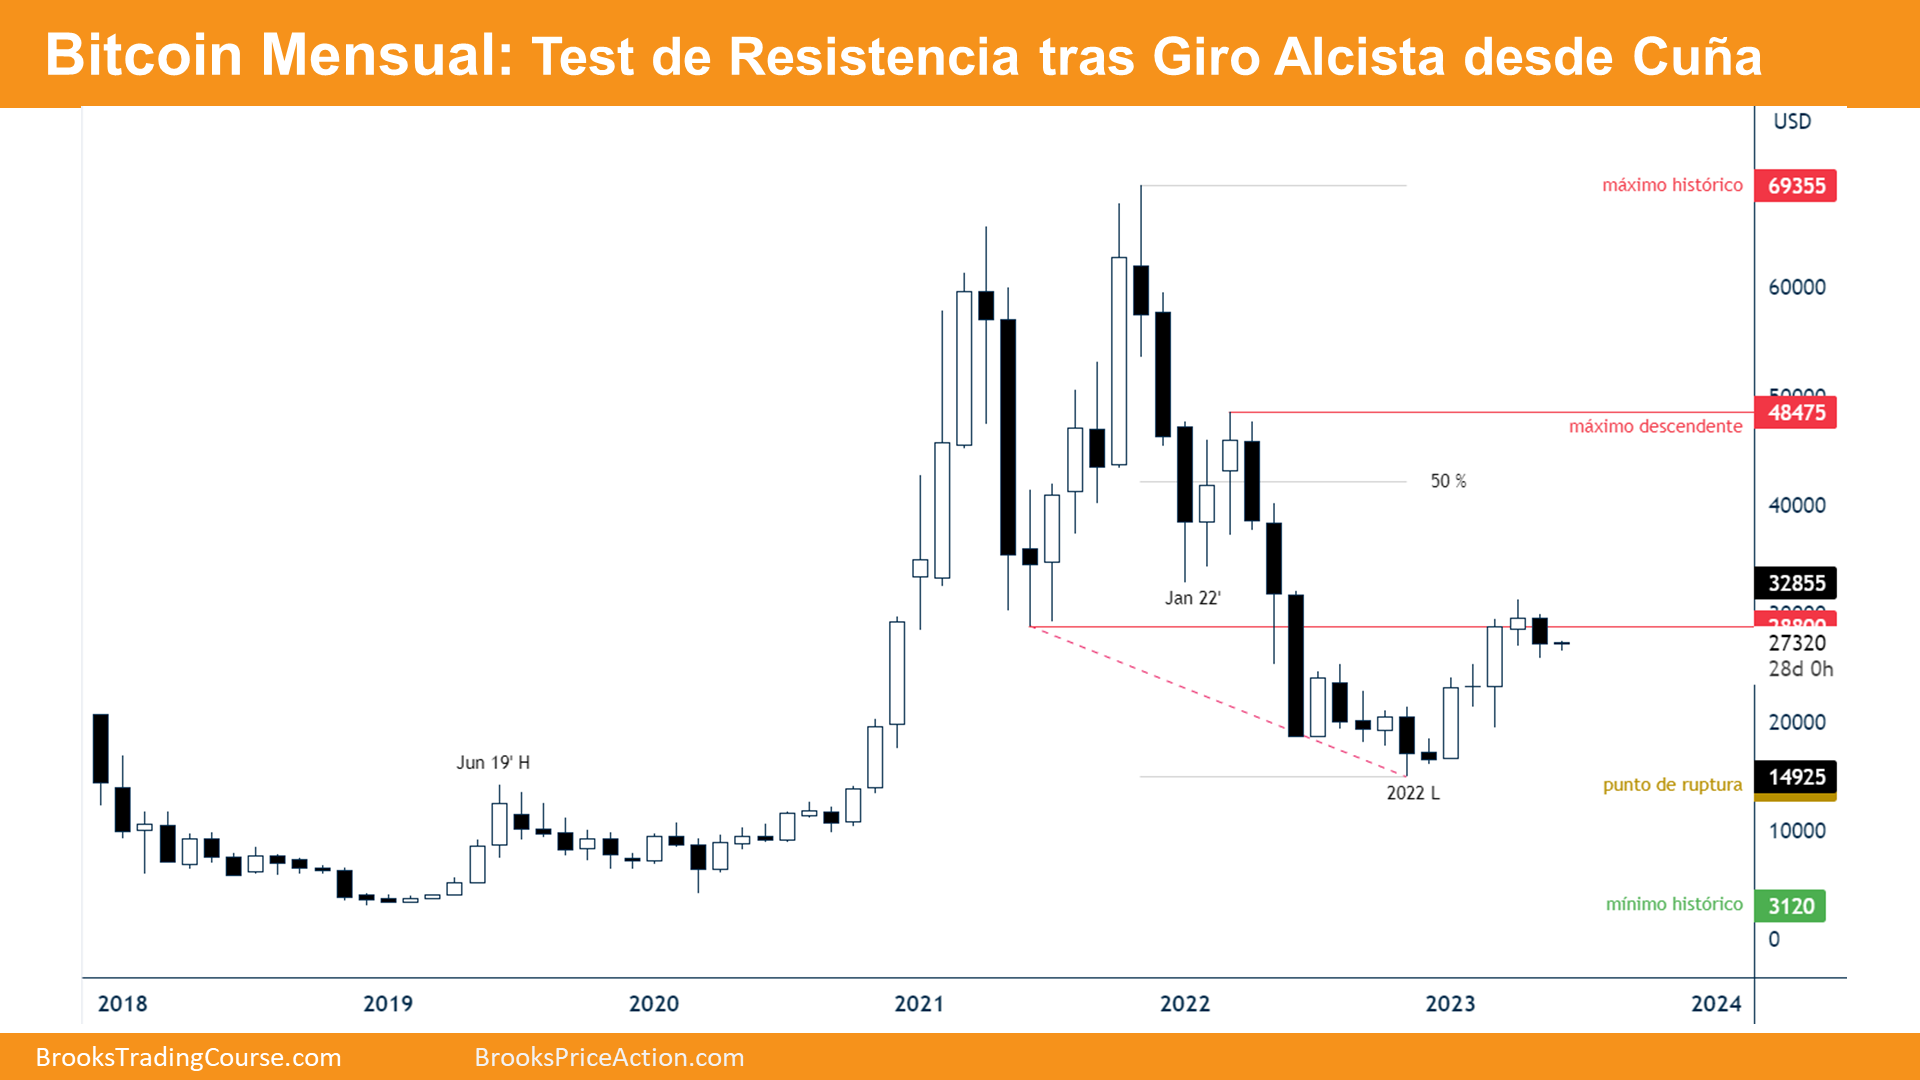 Bitcoin Mensual: Test de Resistencia tras Giro Alcista desde Cuna